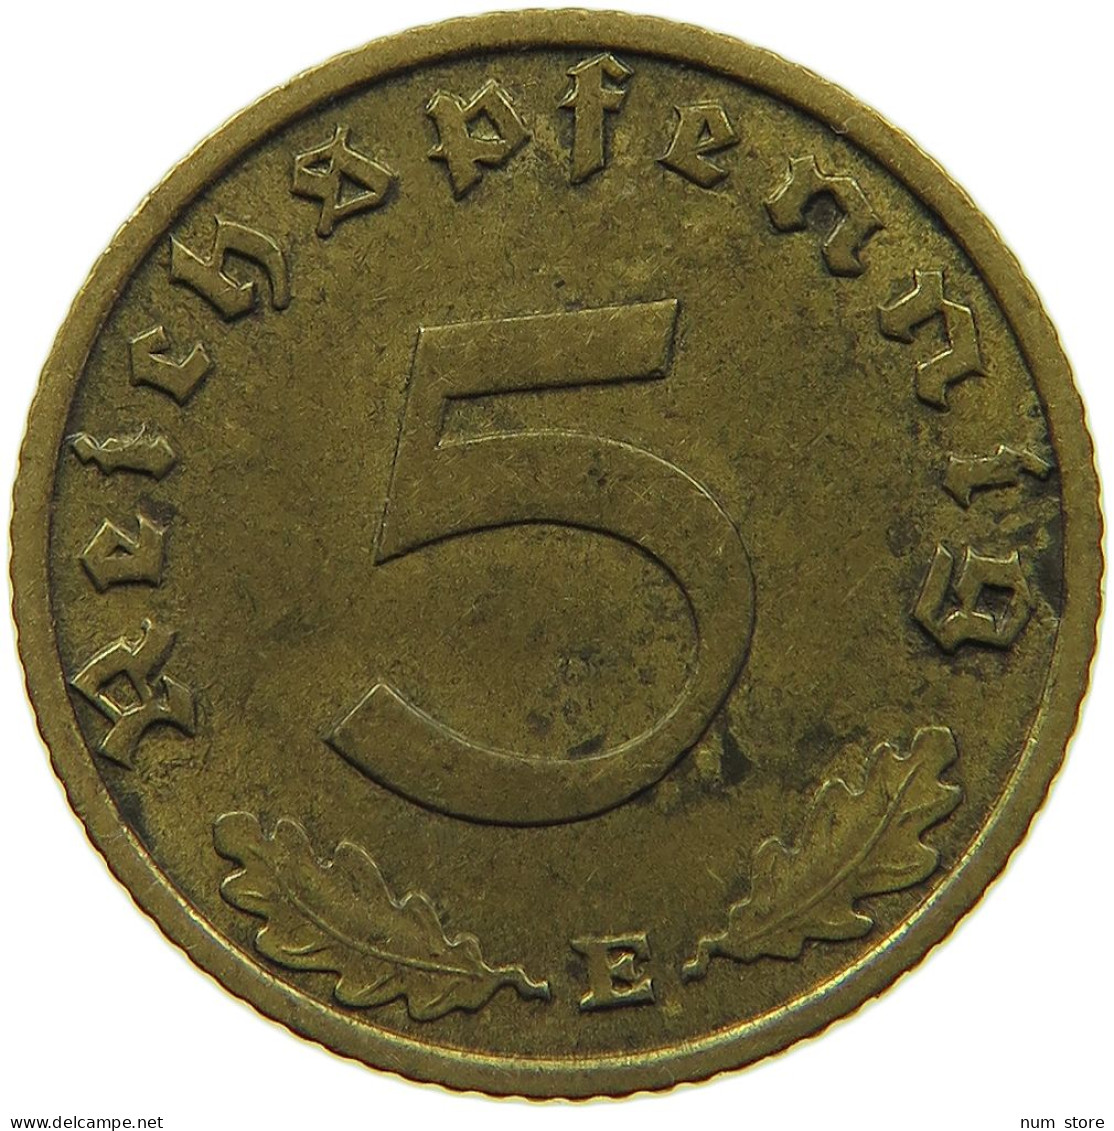 GERMANY 5 REICHSPFENNIG 1939 E #s091 0689 - 5 Reichspfennig